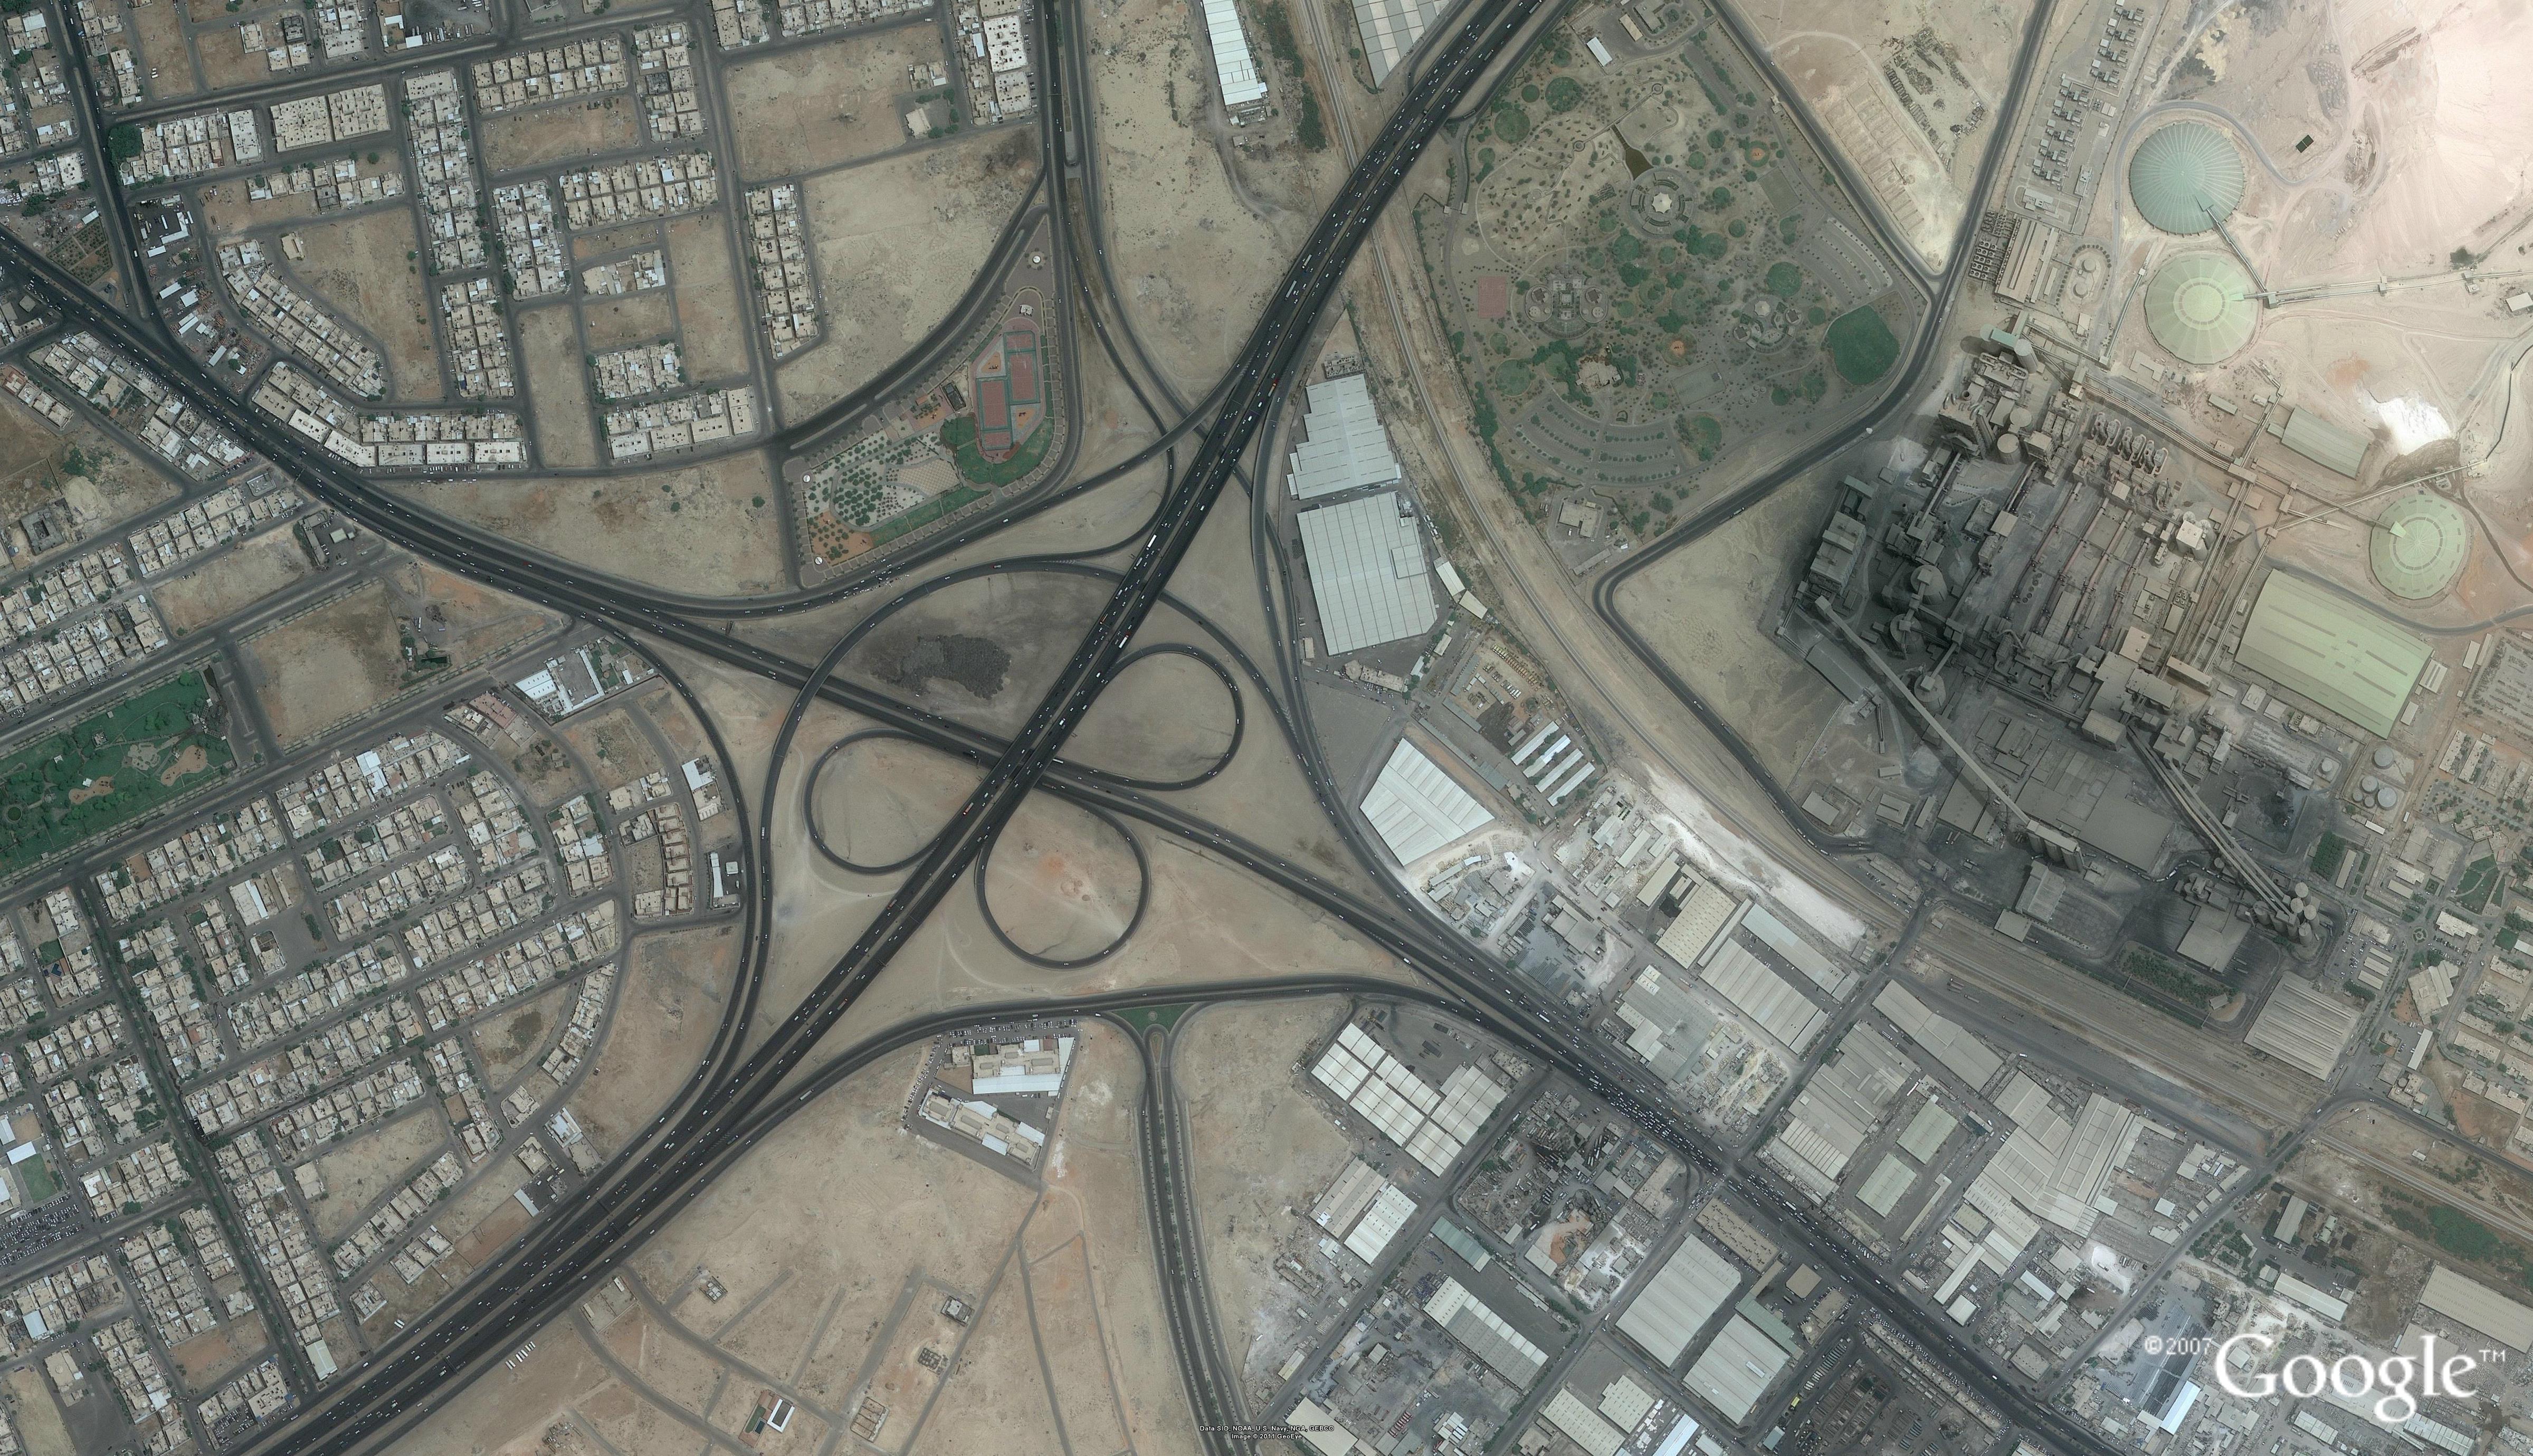 مشروع تنفيذ جسر تقاطع شارع العزيزية والطريق الدائري جنوب الرياض